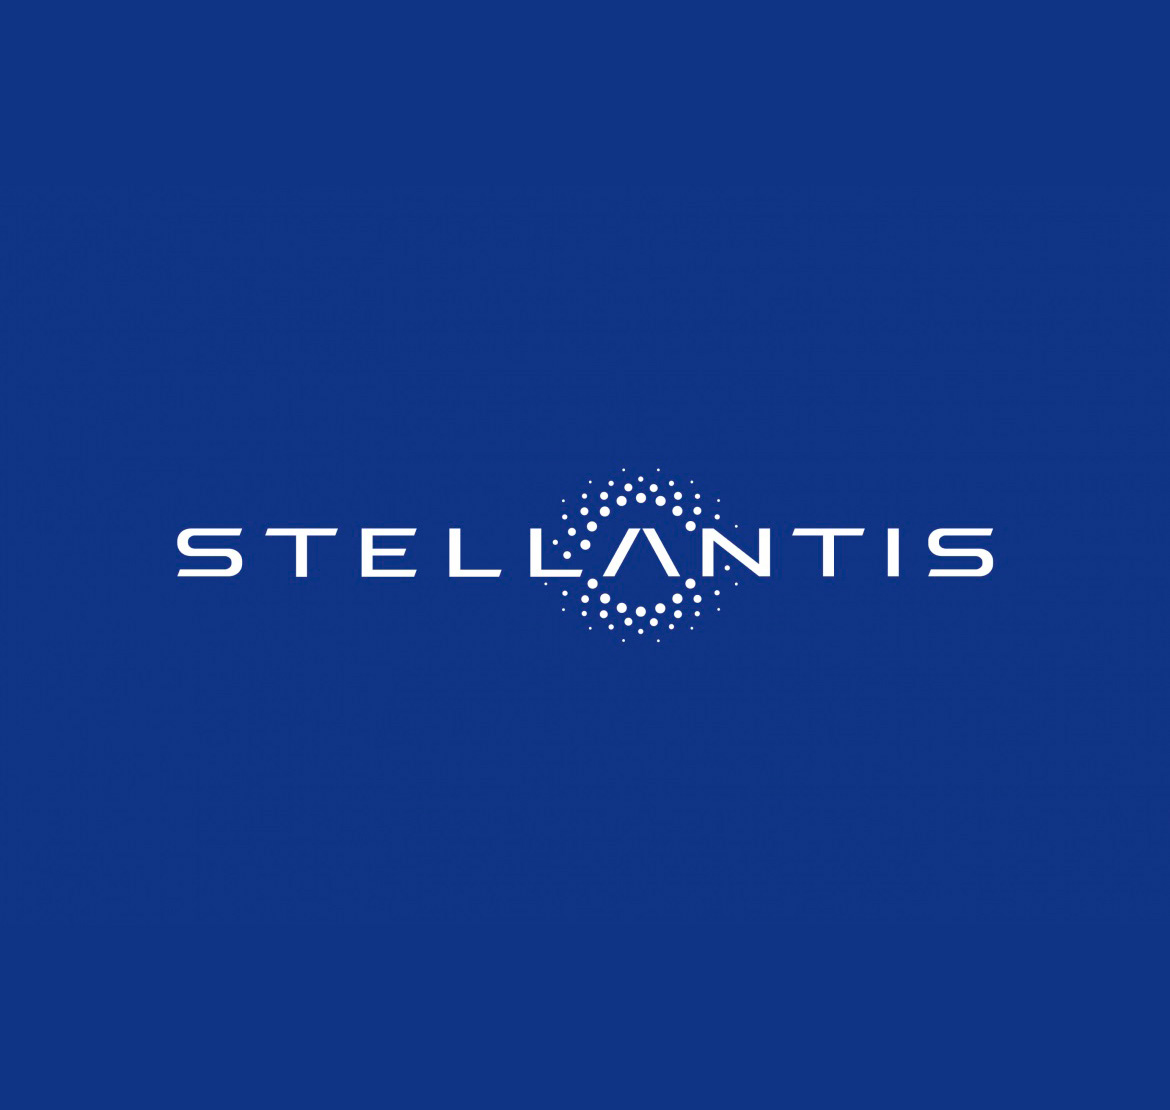 Stellantis повідомляє про чистий виторг за третій квартал у розмірі 32,6 млрд євро. Значні комерційні заходи та запуск нових продуктів пом’якшили вплив дефіциту напівпровідників. Річні прогнозні показники підтвердились